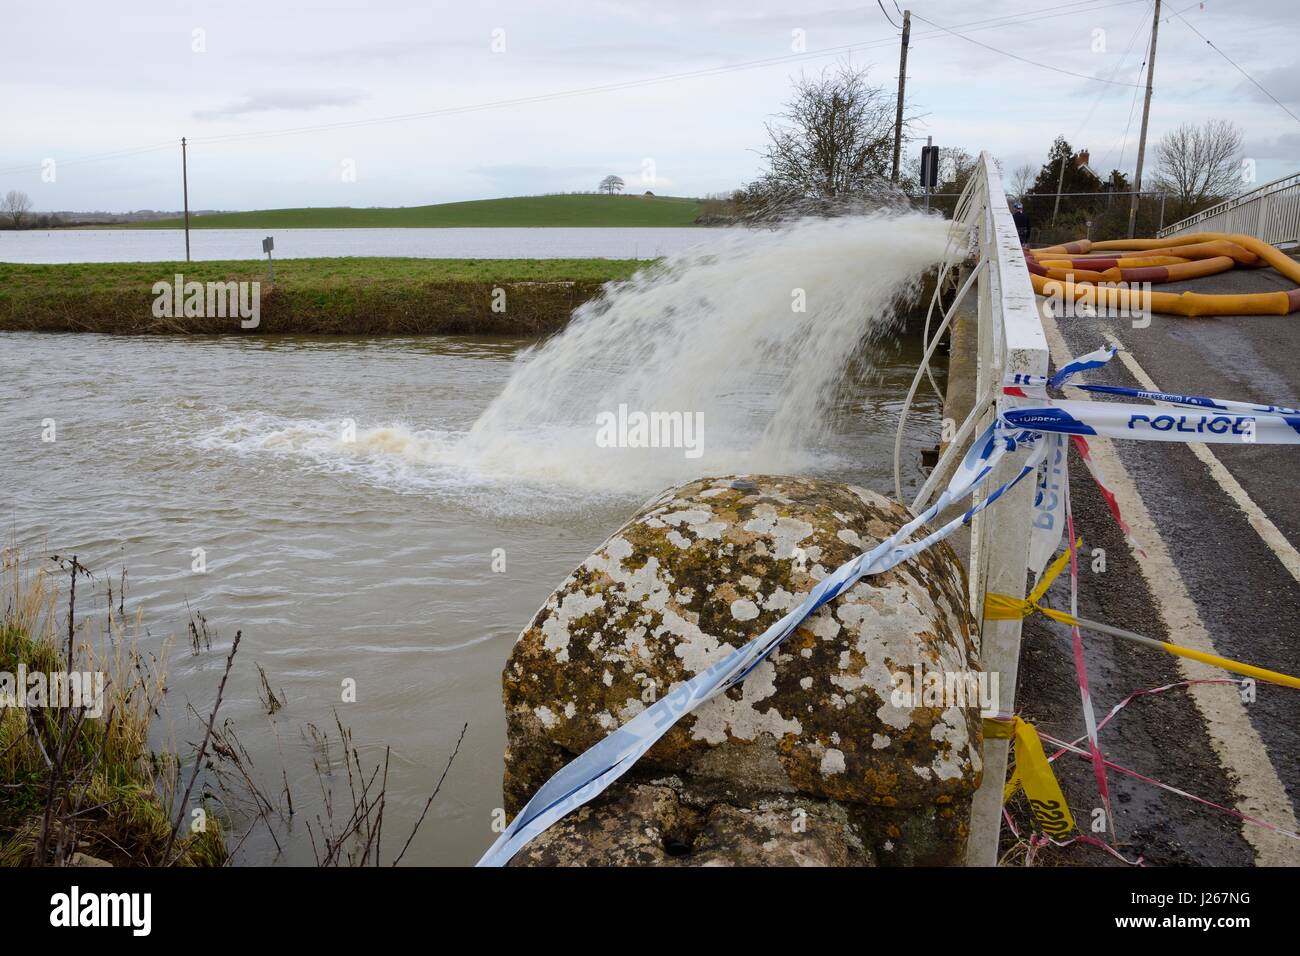 Pont du chemin fermé et pompes à eau travaillant pour effacer la submersion de terres, d'eau après des semaines de forte pluie, les niveaux de Somerset, Royaume-Uni, février 2014. Banque D'Images